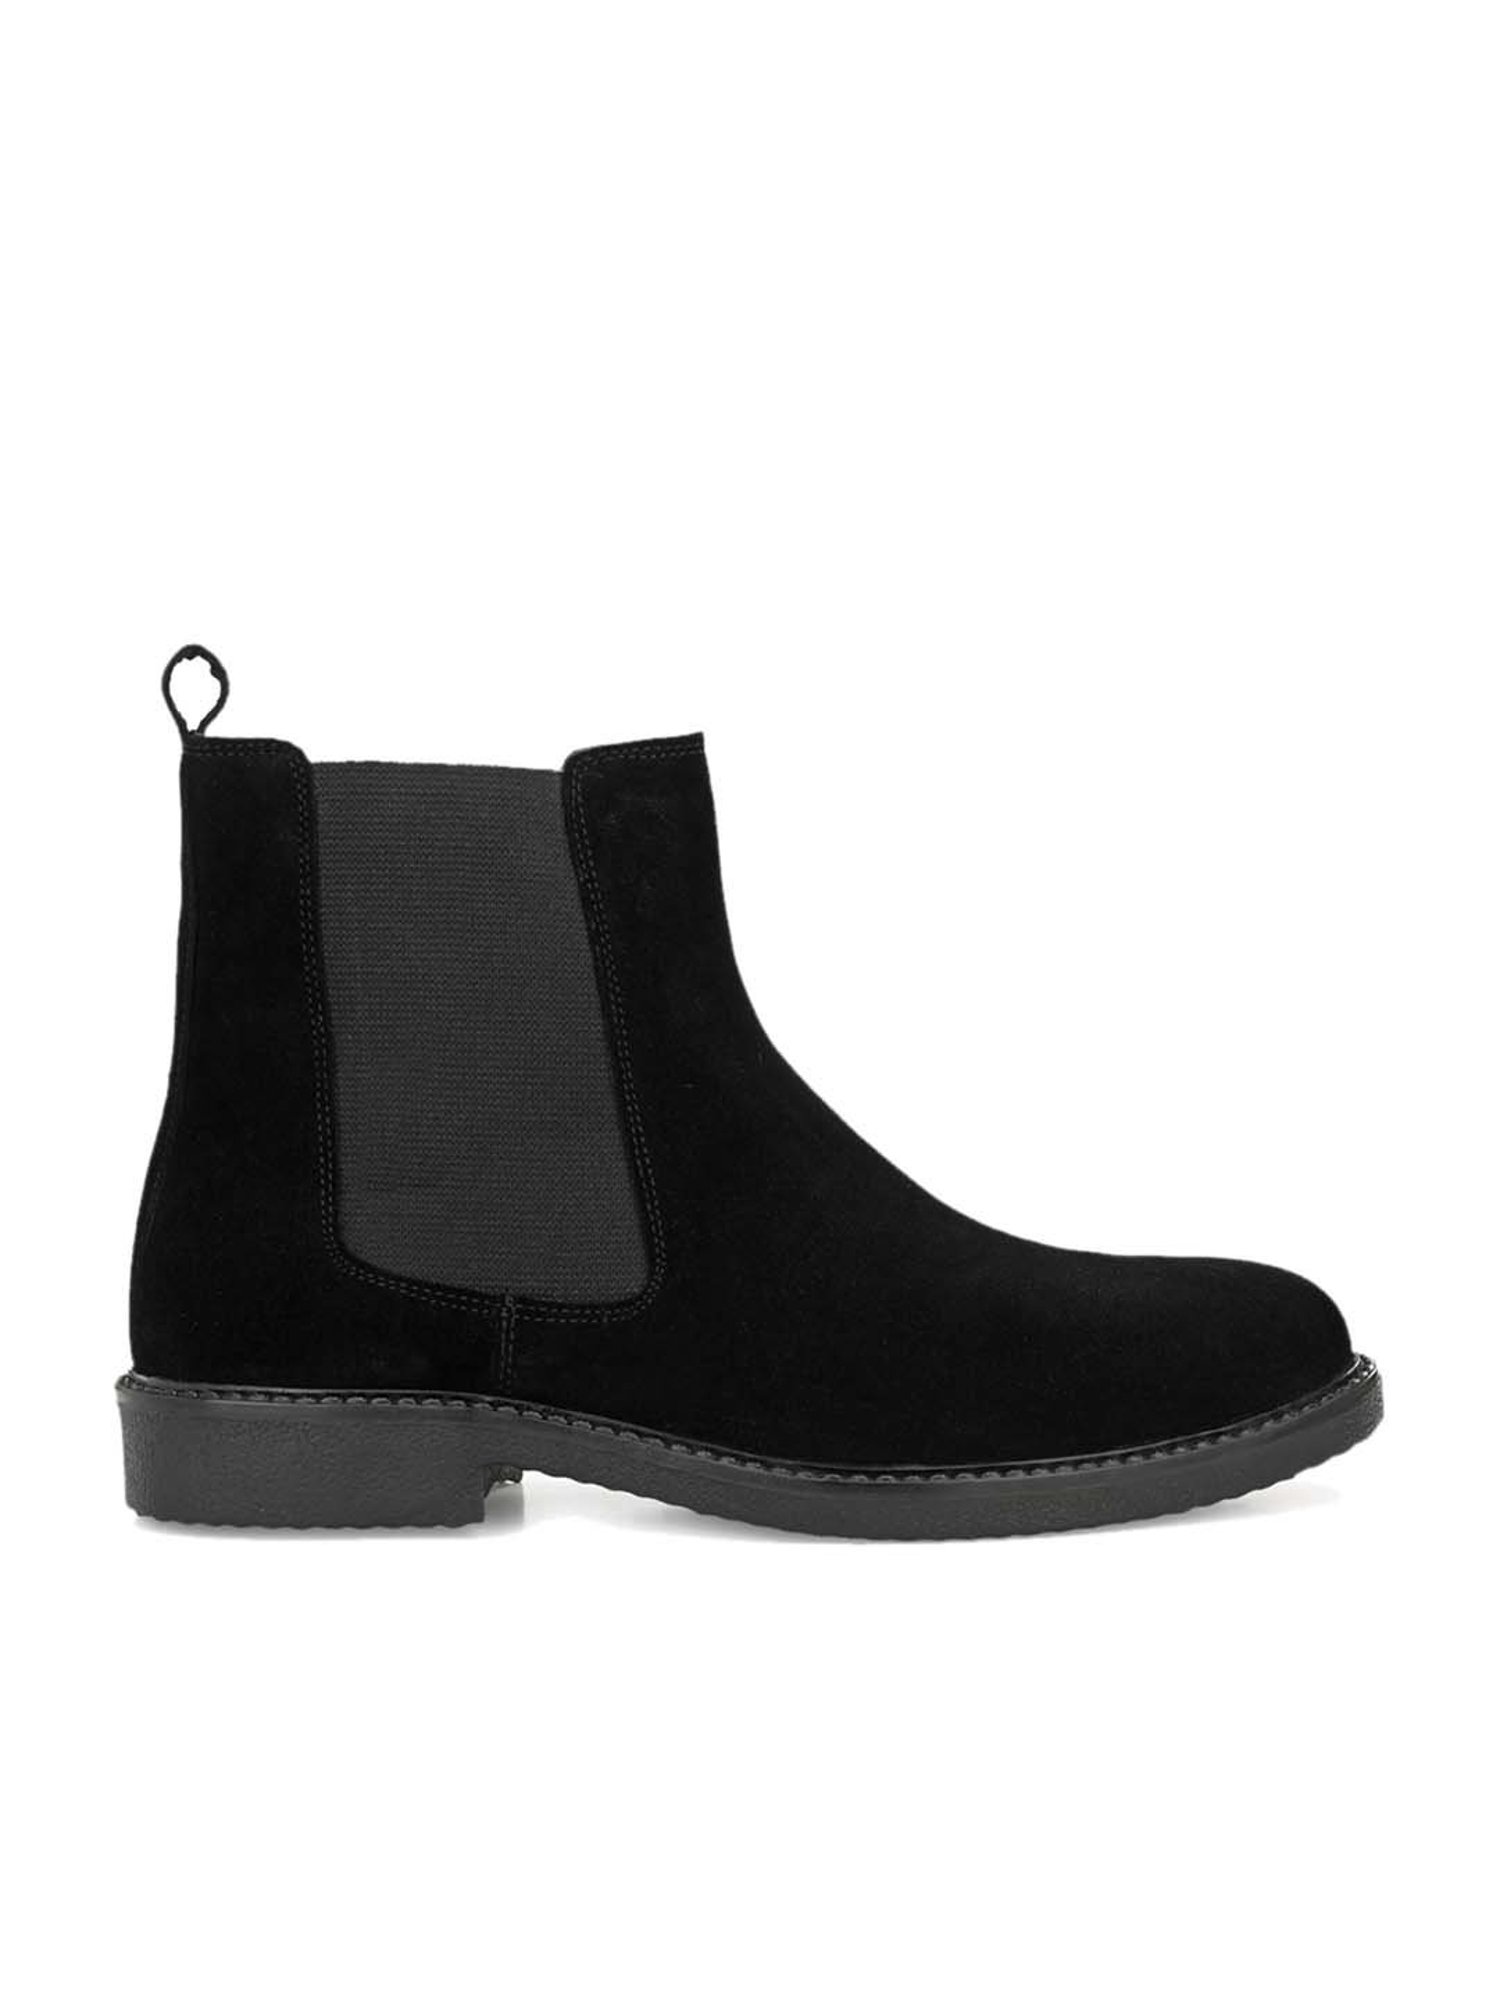 Carlo Romano Men's Black Chelsea Boots-Carlo Romano-Footwear-TATA CLIQ